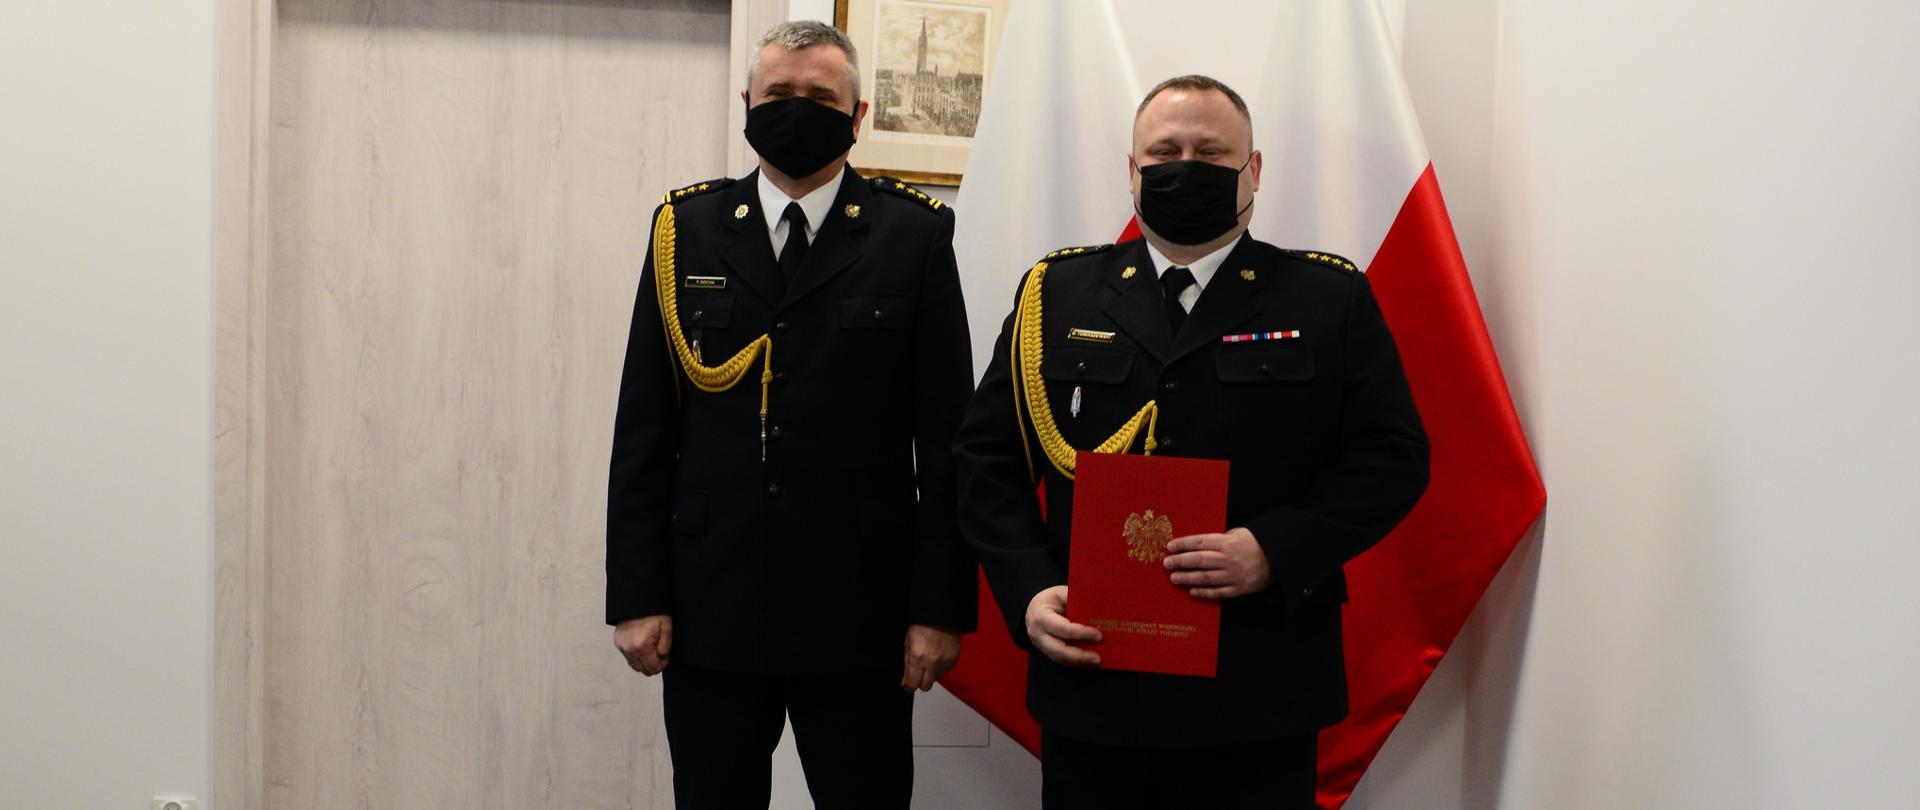 Pomorski komendant wojewódzki Państwowej Straży Pożarnej wręcza funkcjonariuszowi akt powierzenia obowiązków komendanta powiatowego Państwowej Straży Pożarnej w Malborku. 